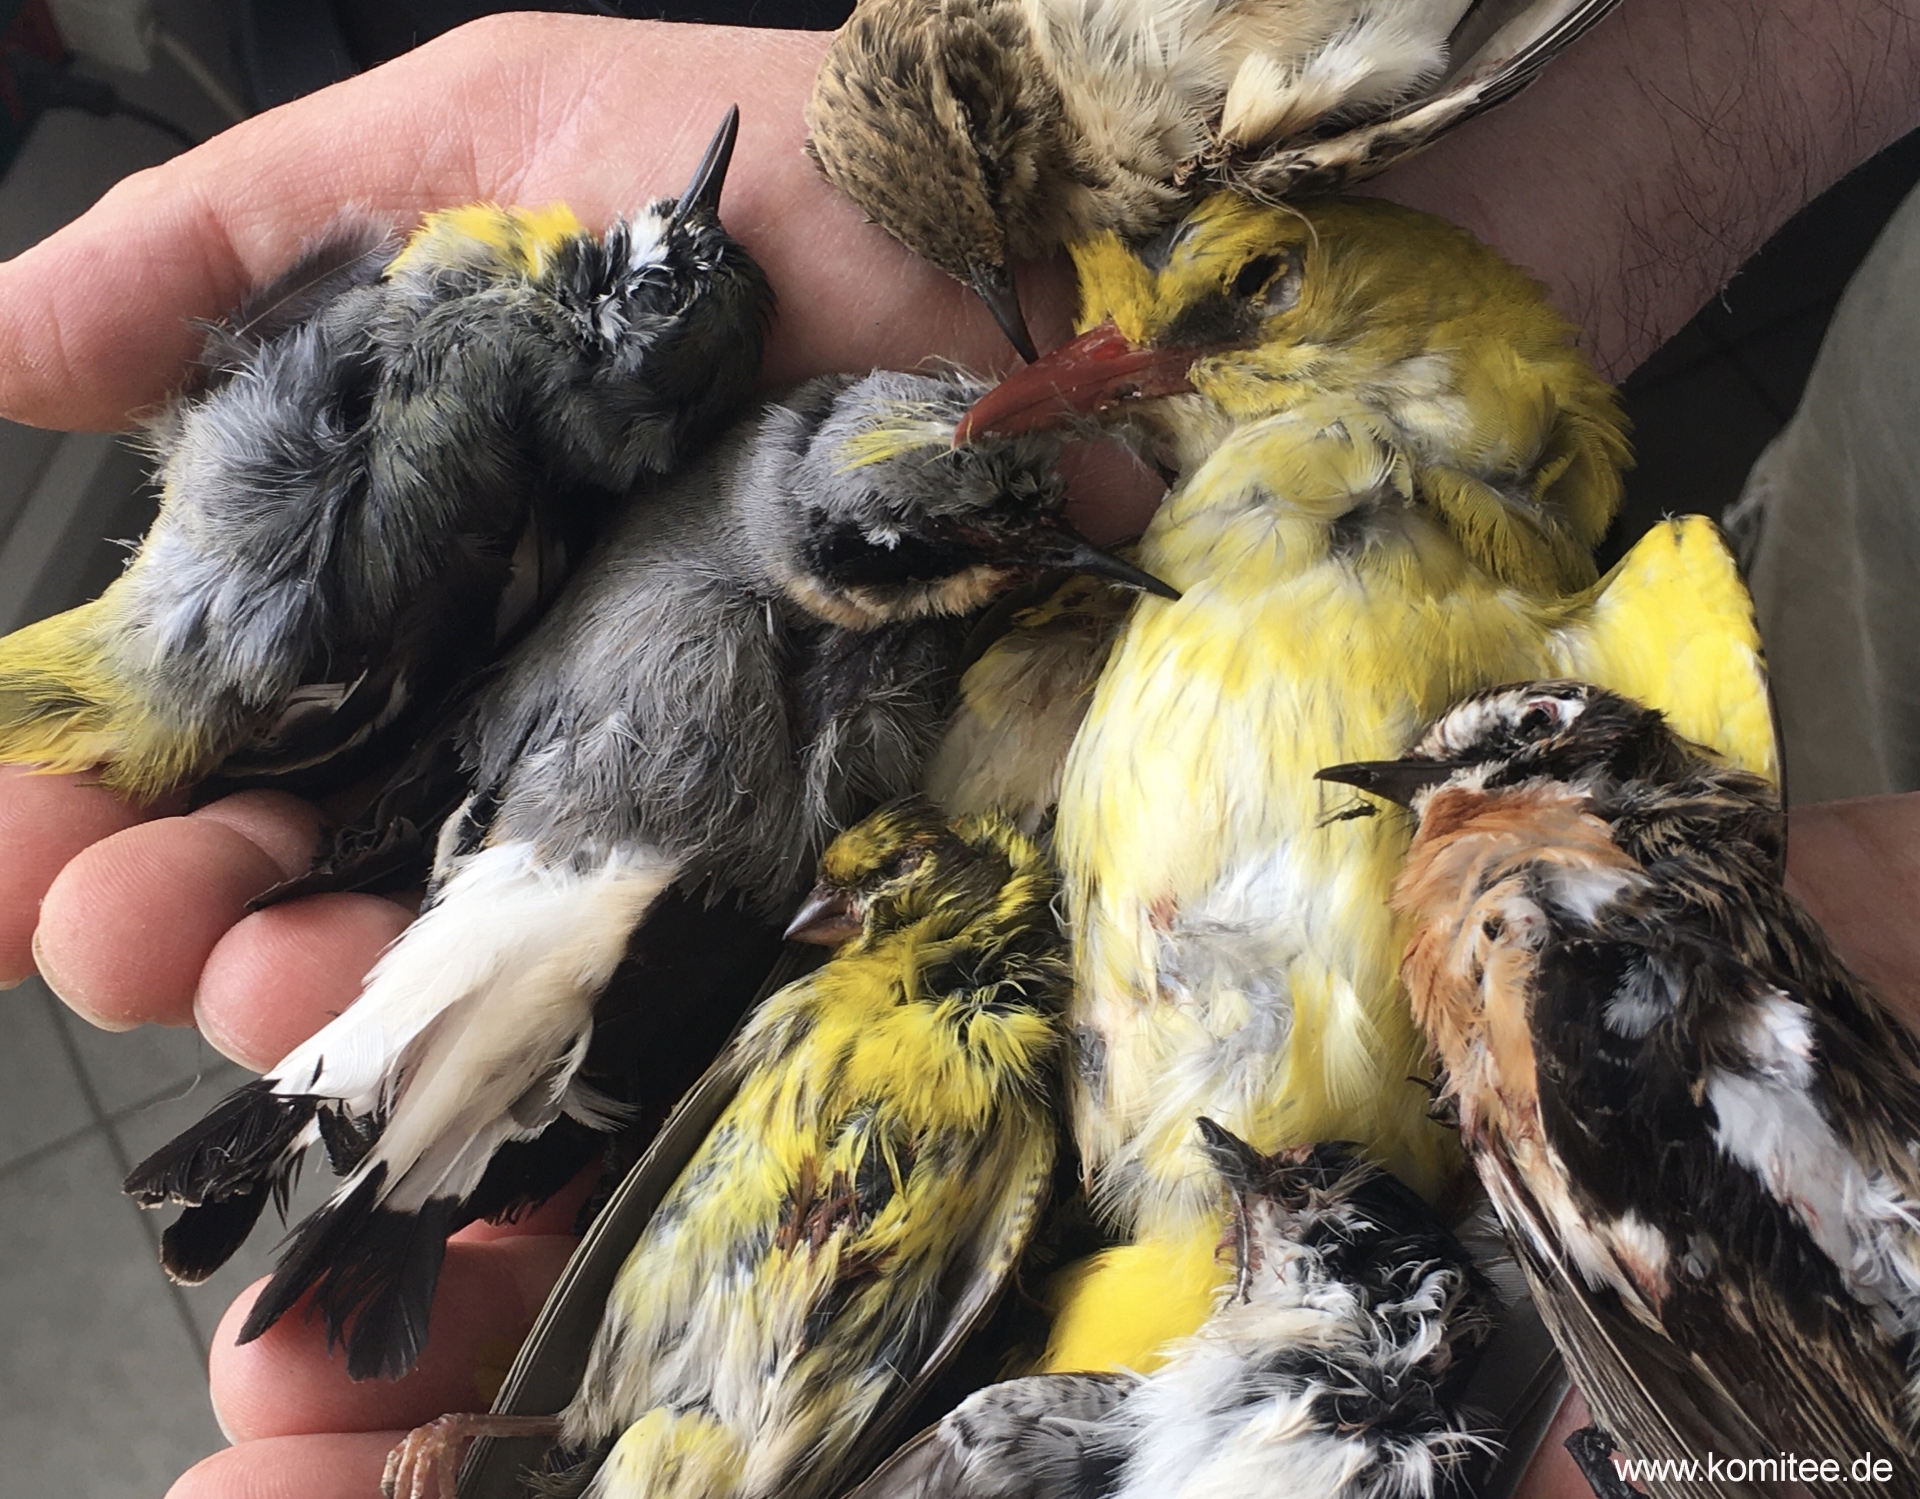 Uccelli protetti abbattuti a Ischia: stiaccino, verzellino, culbianco, rigogolo, balia nera, cutrettola